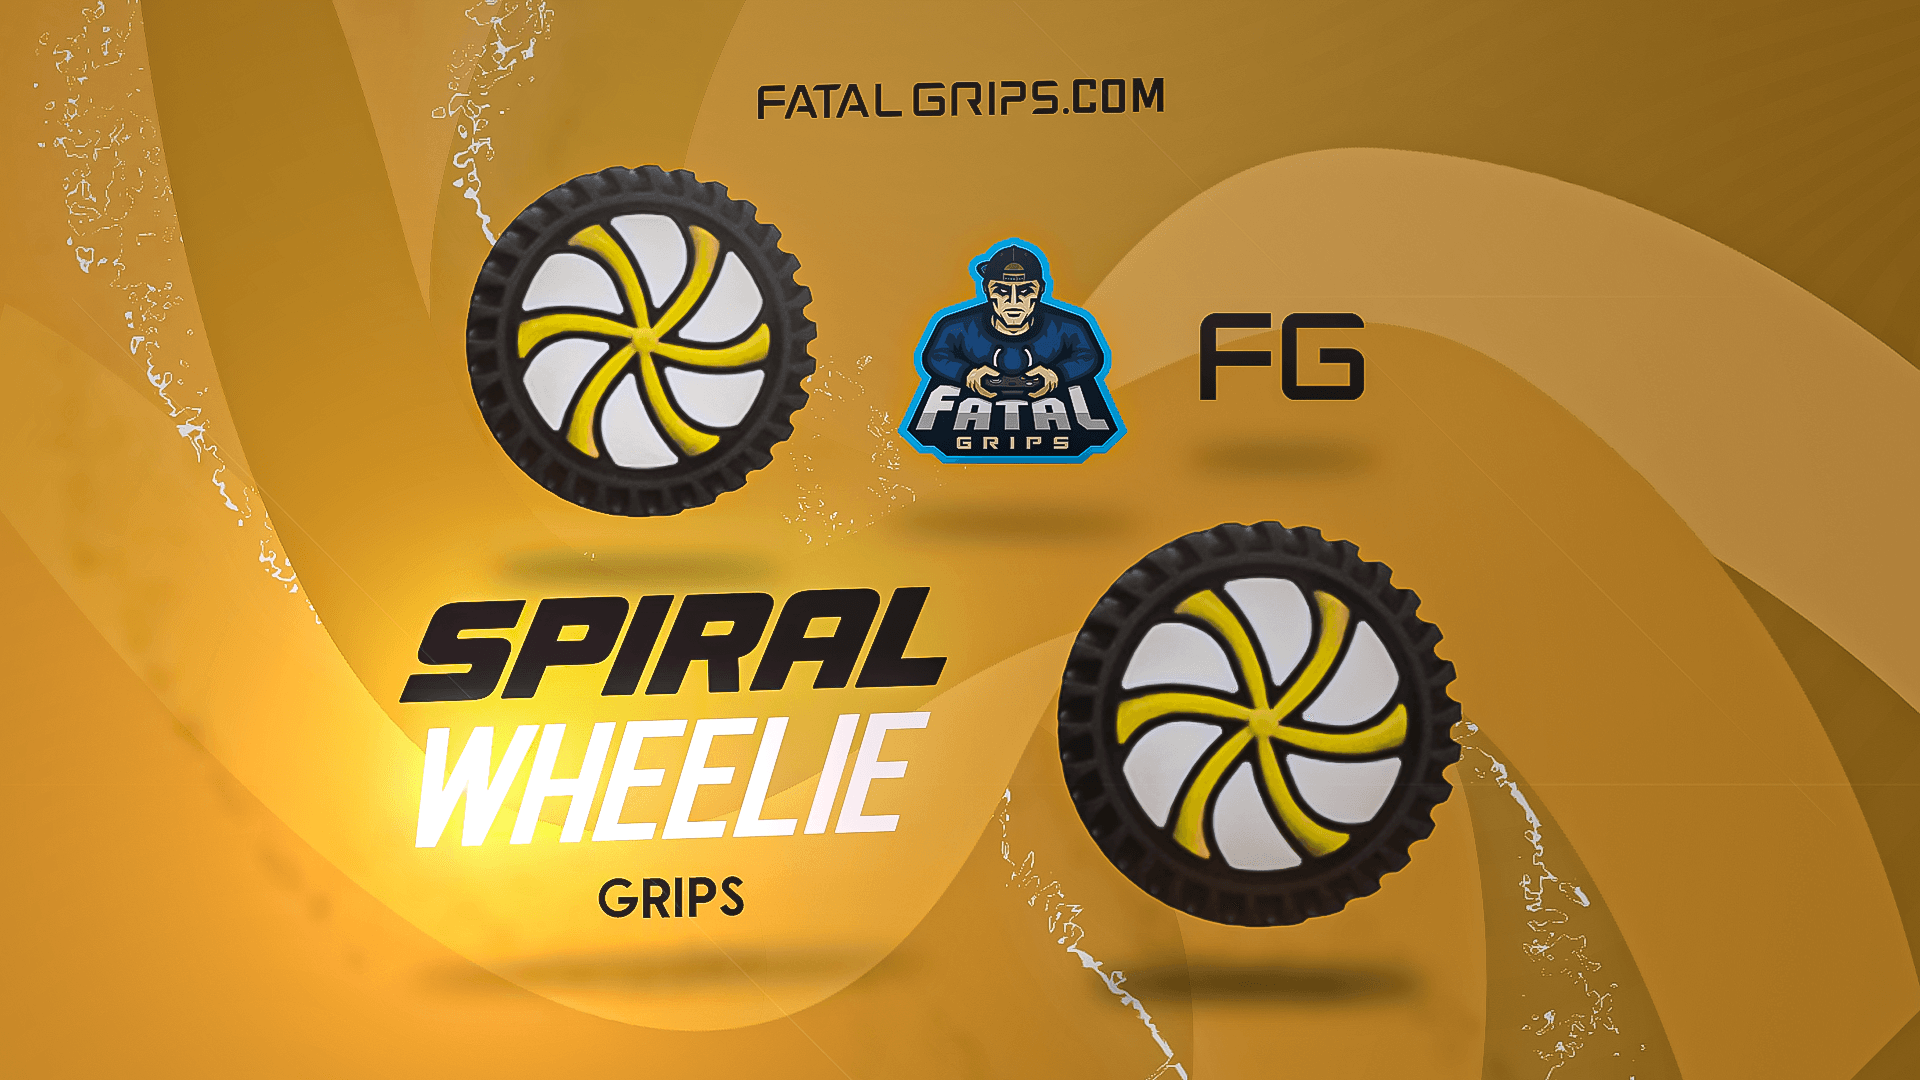 Spiral Wheelie Grips - Fatal Grips